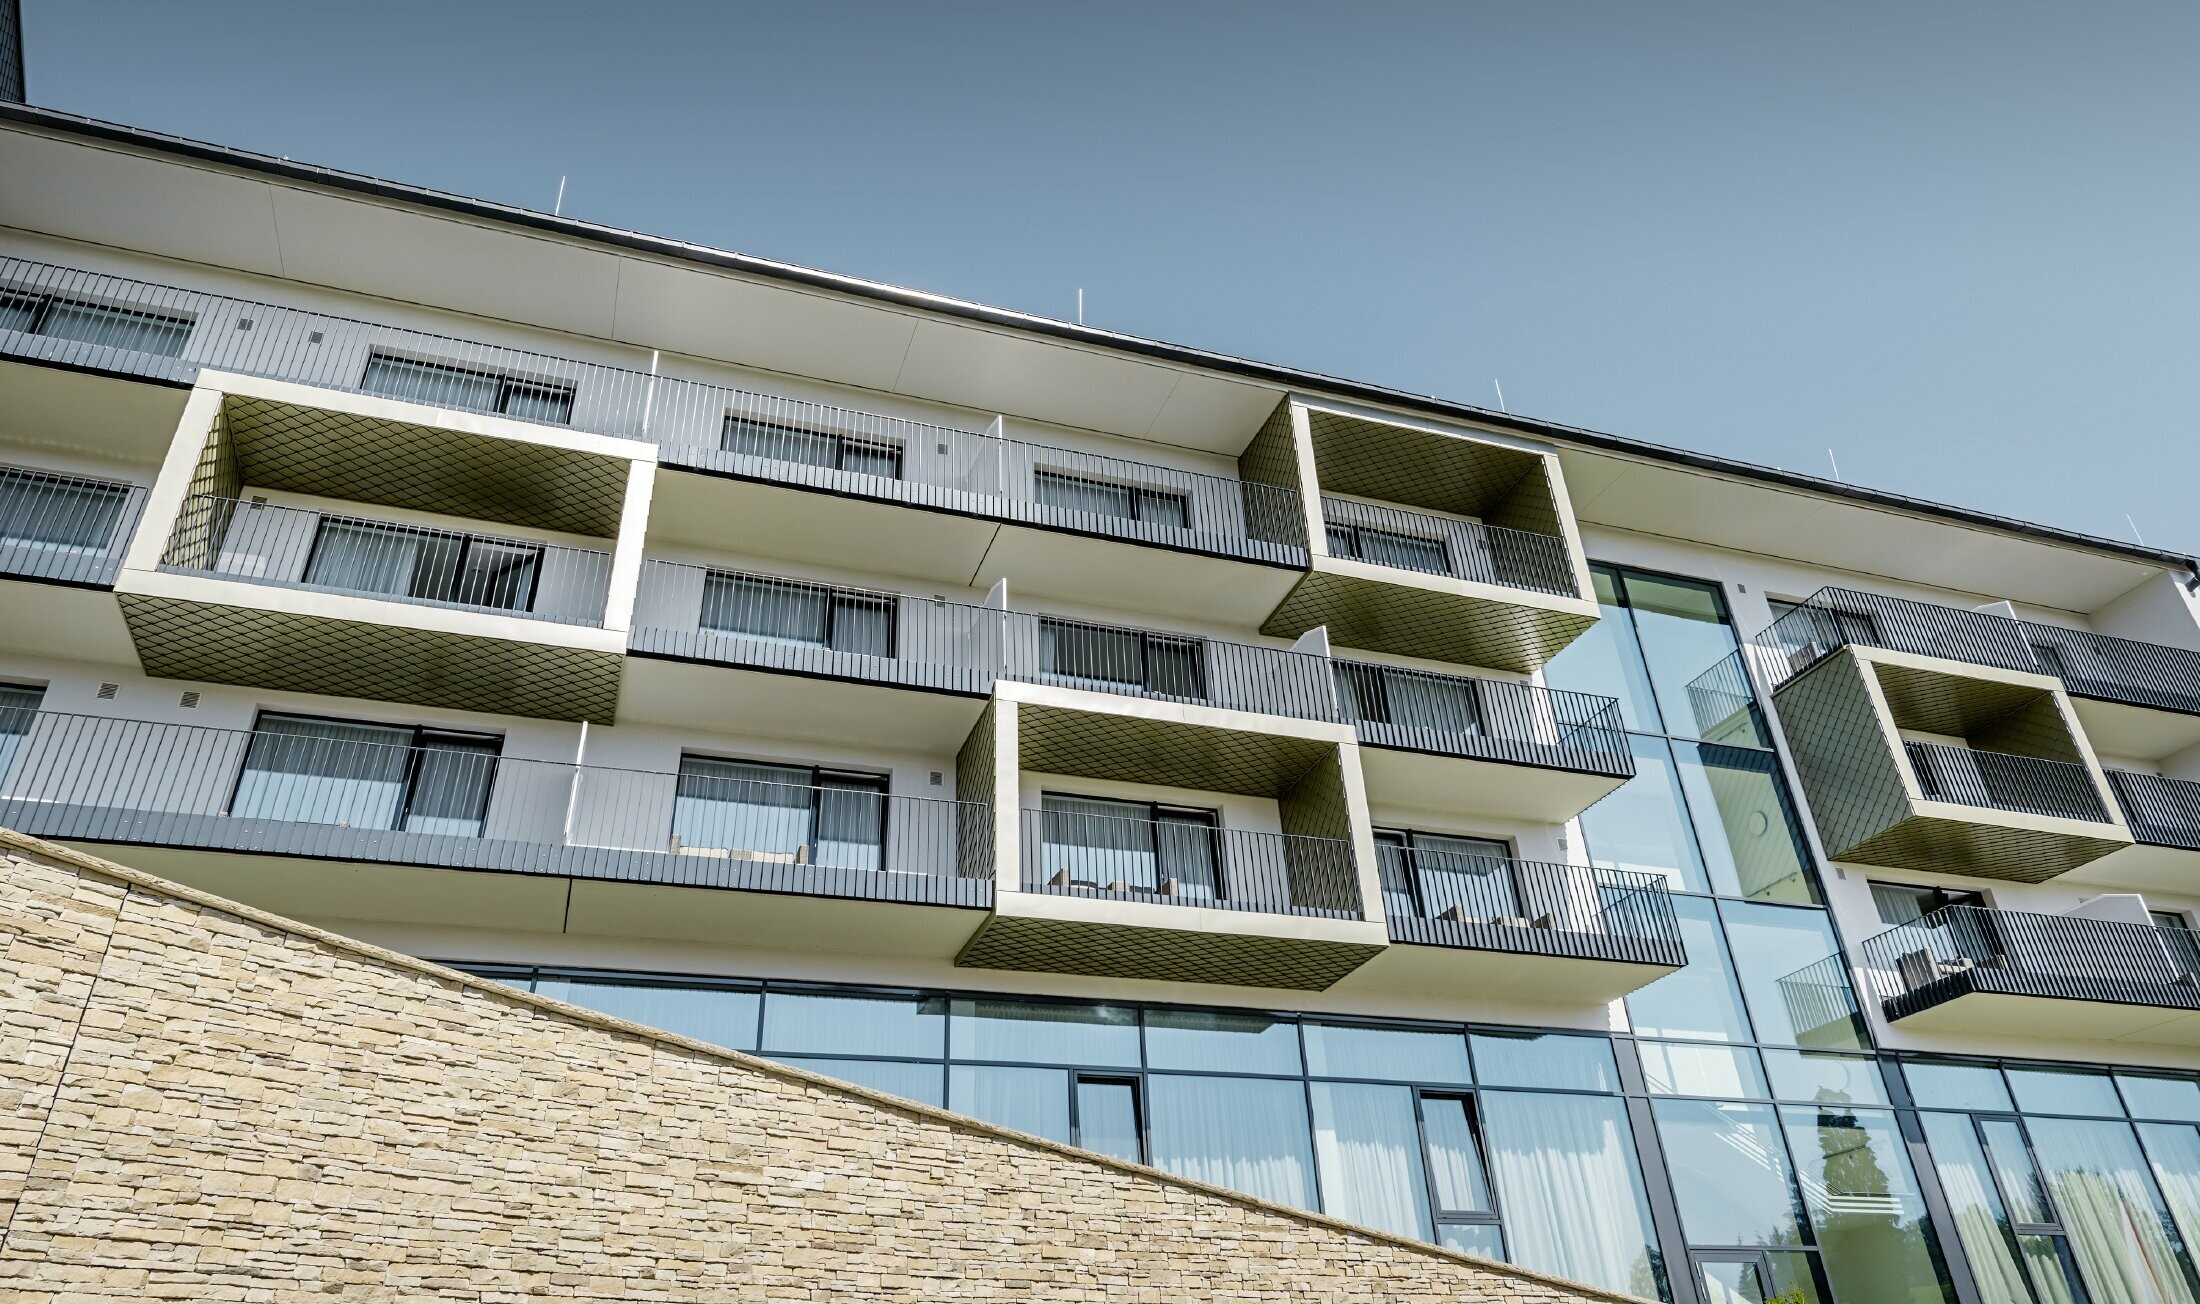 Balkonverkleidungen des Hotels Edita in Scheidegg mit der PREFA Wandraute in Lichtbronze